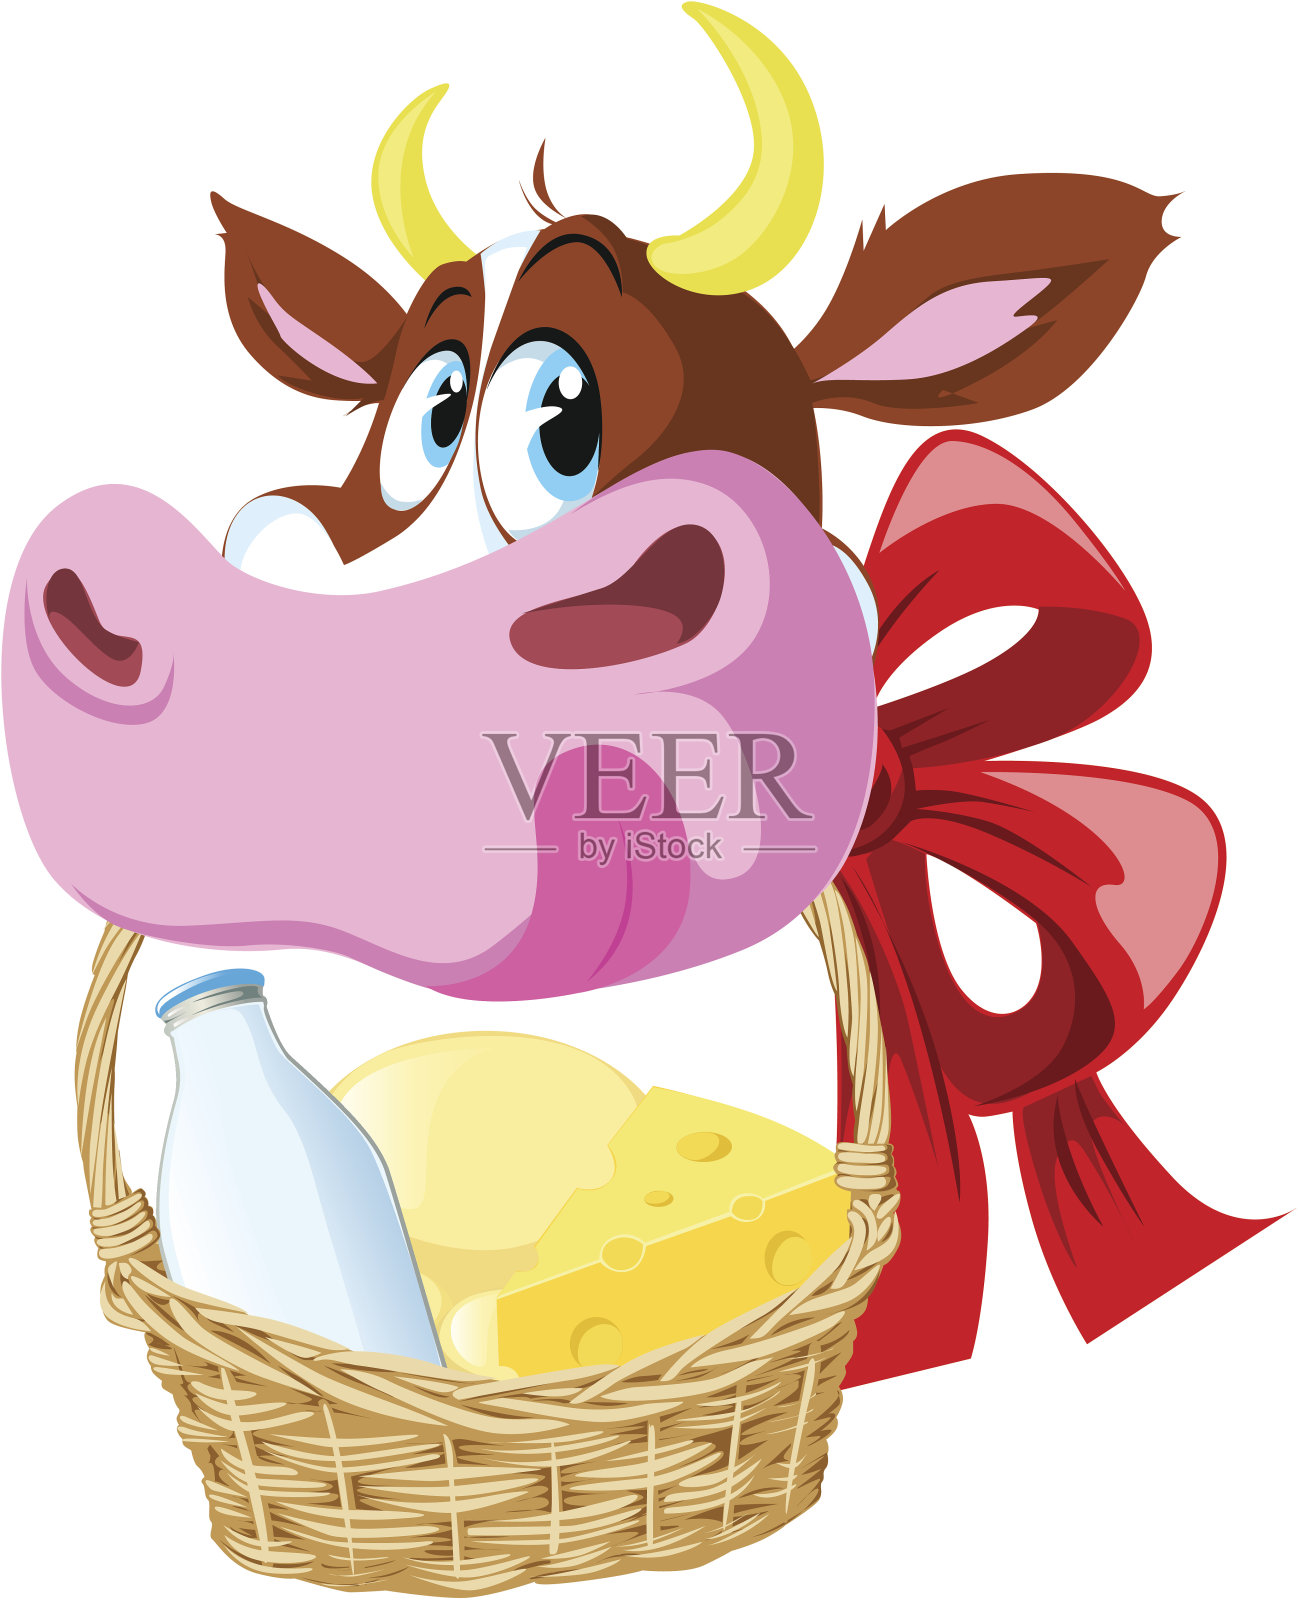 抱着牛奶和奶酪篮子的奶牛插画图片素材